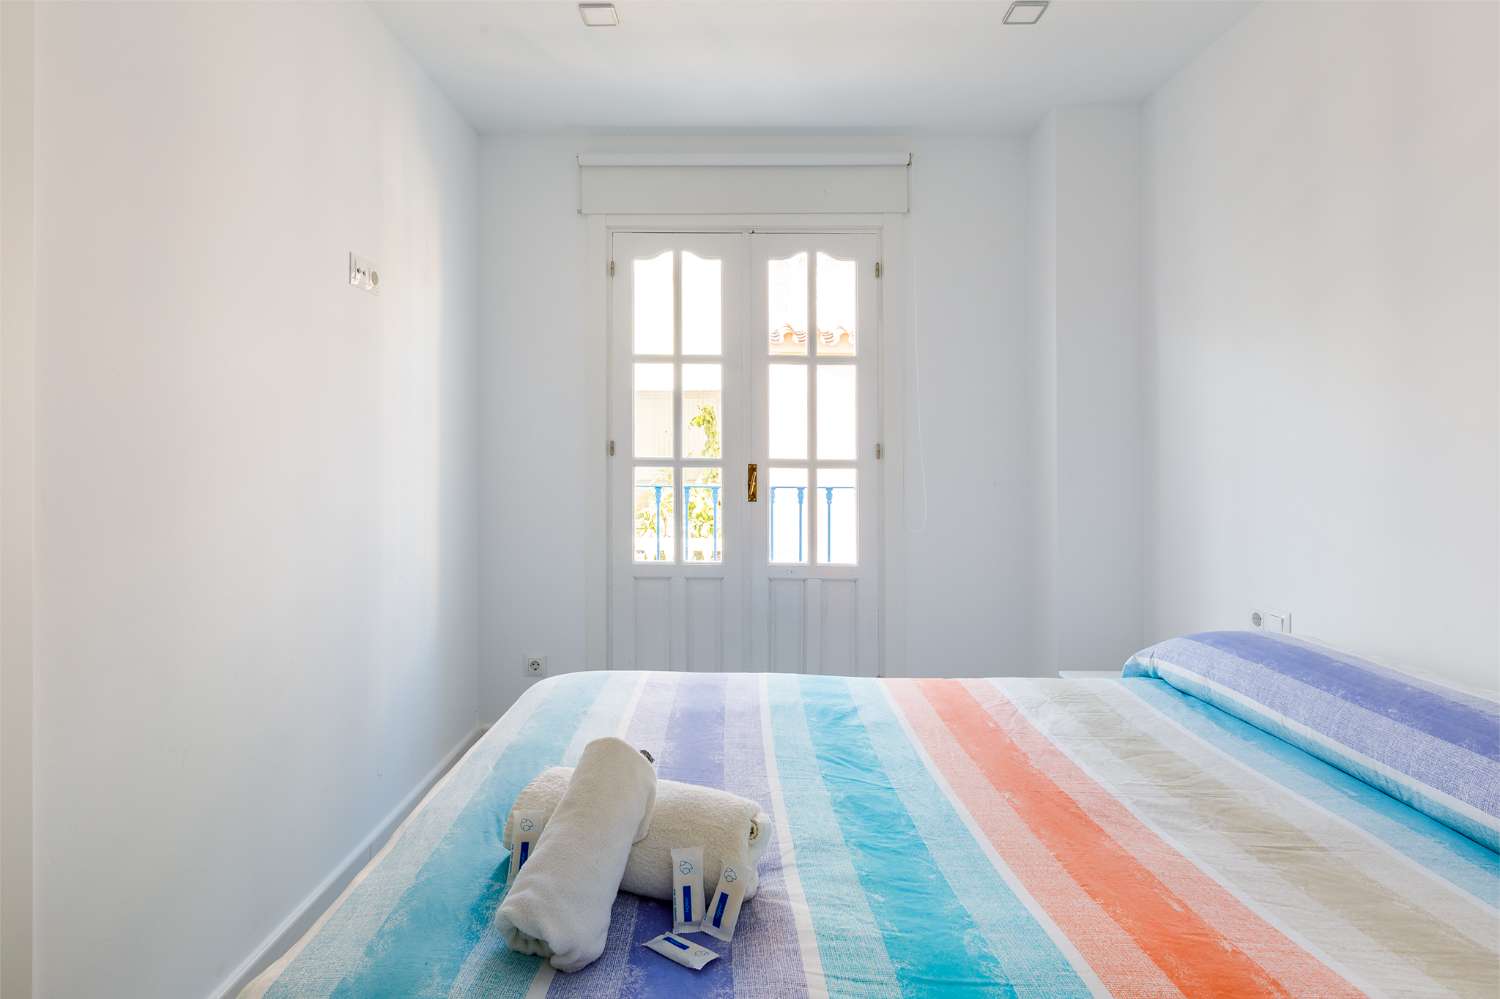 Lägenhet med två sovrum i centrum av Torre del Mar, tillgänglig för vintern